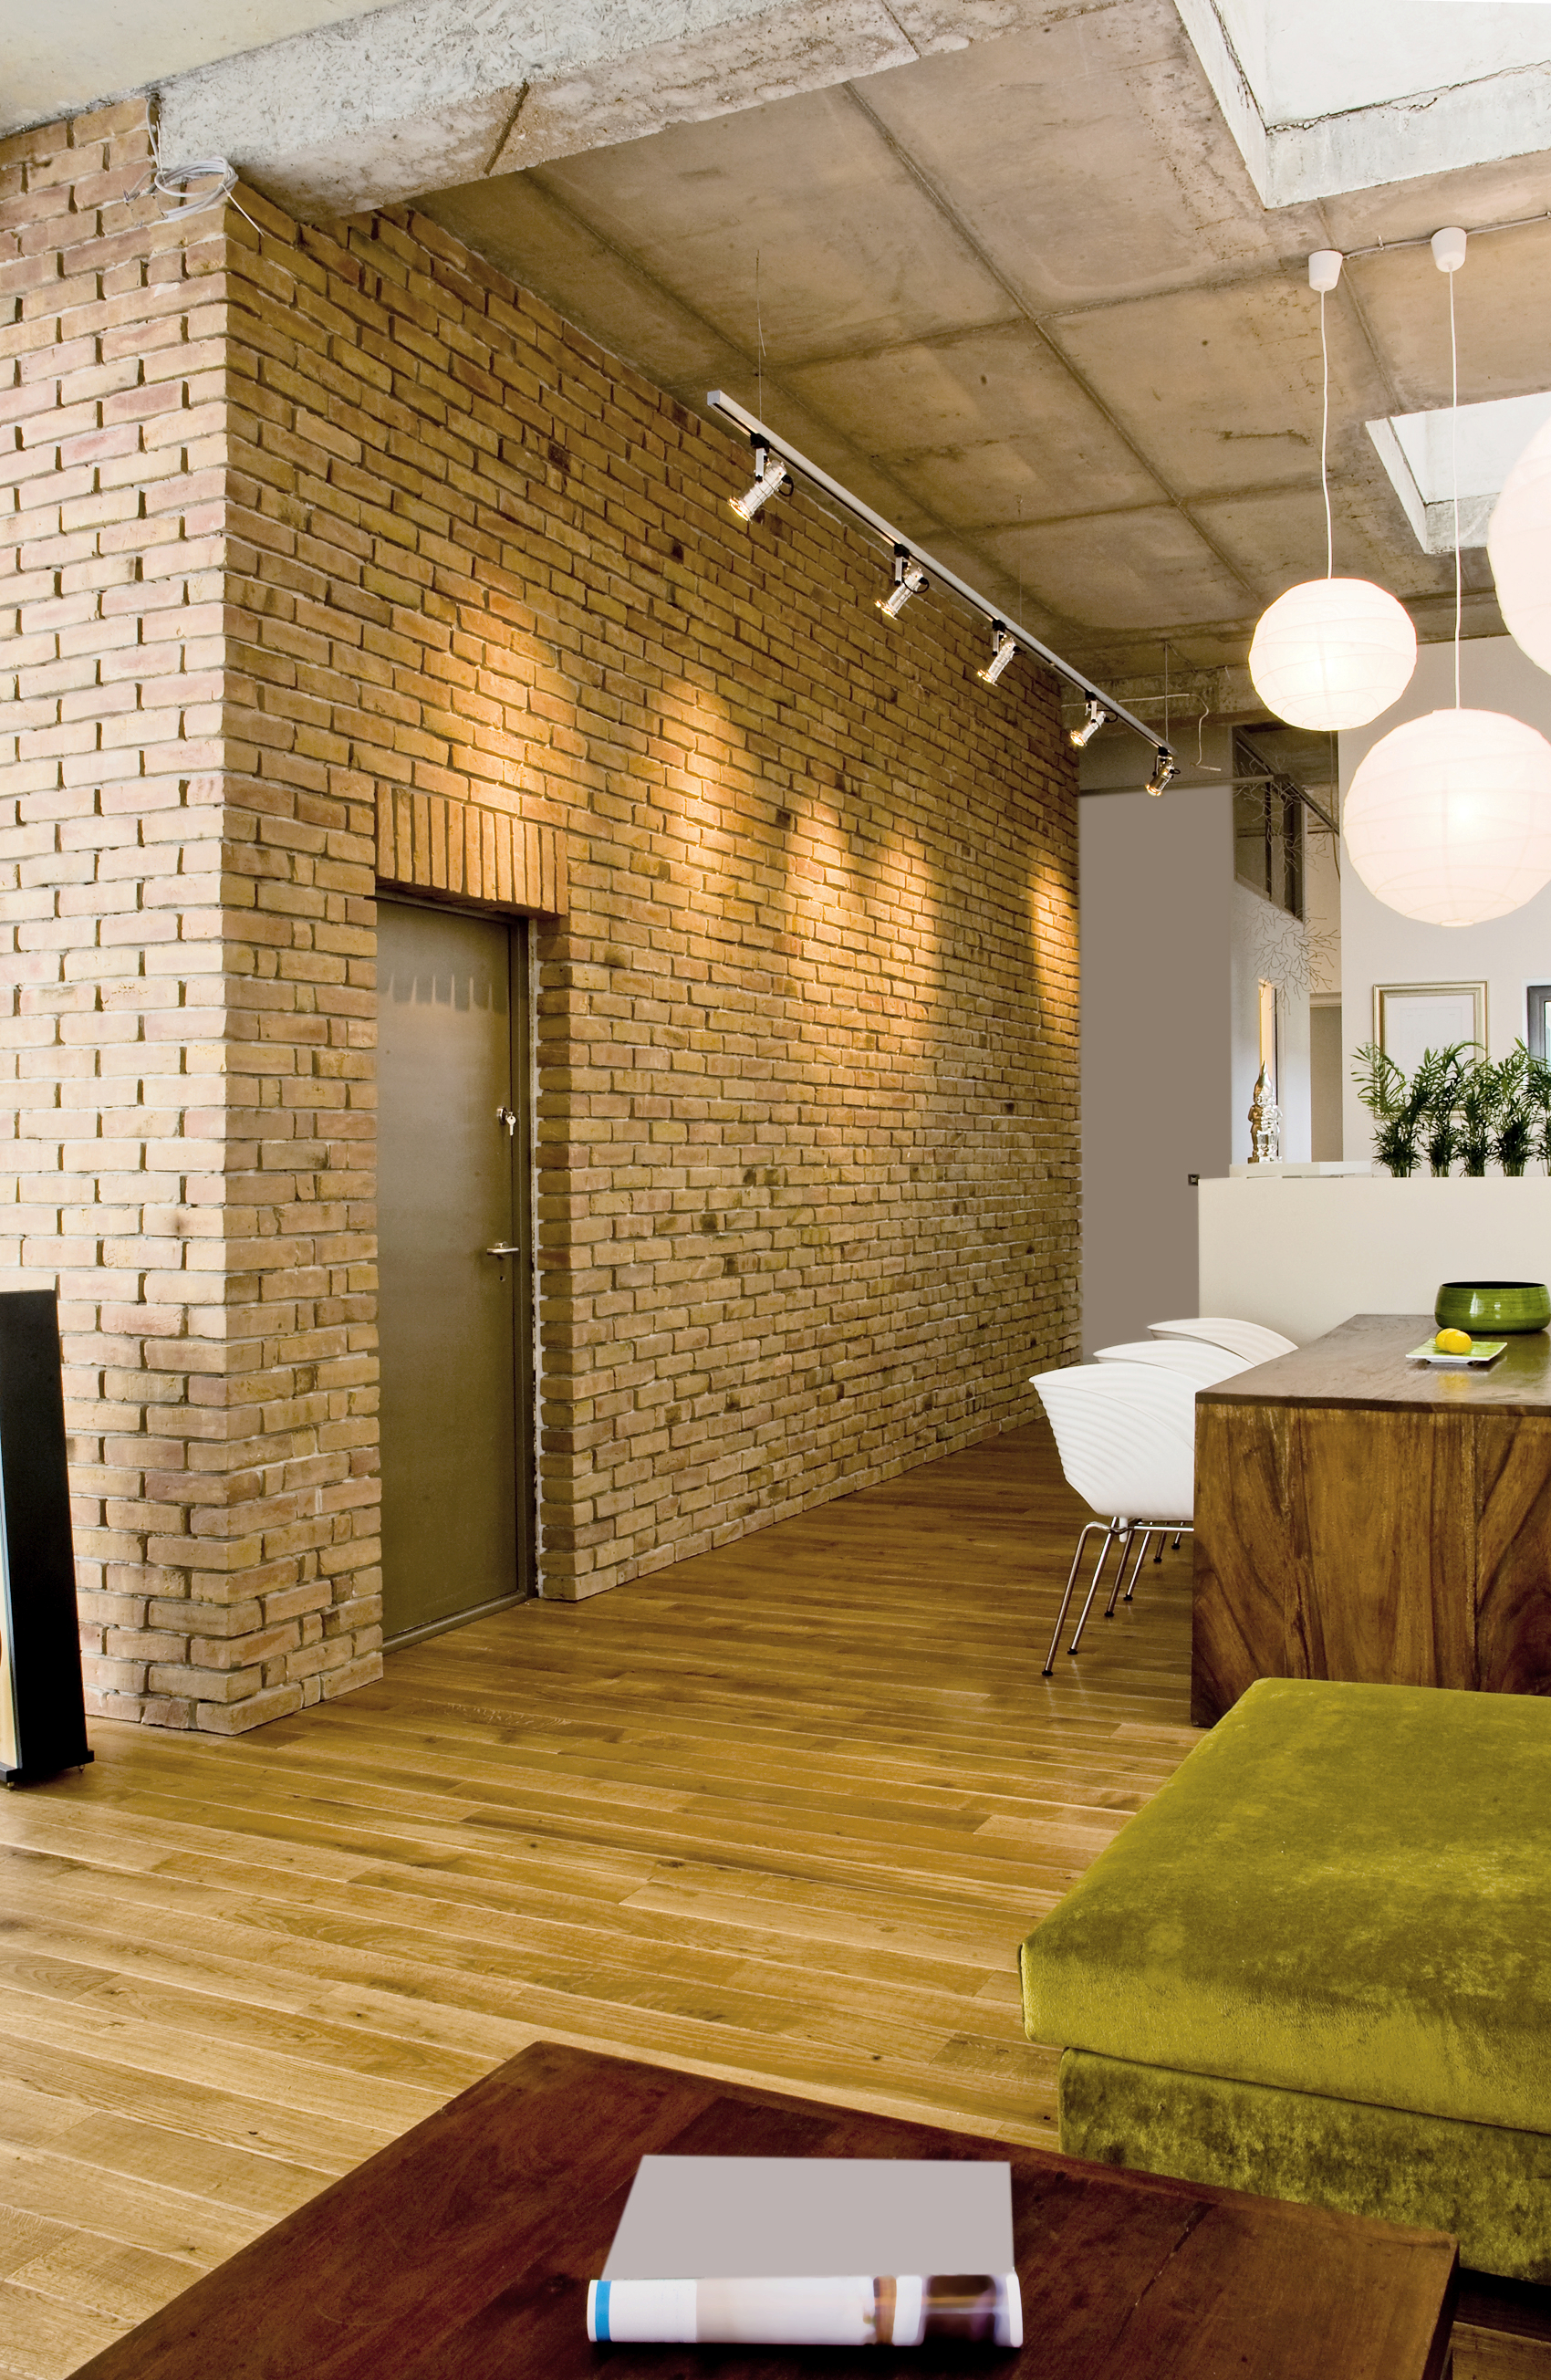 How To Restore Interior Brick Walls